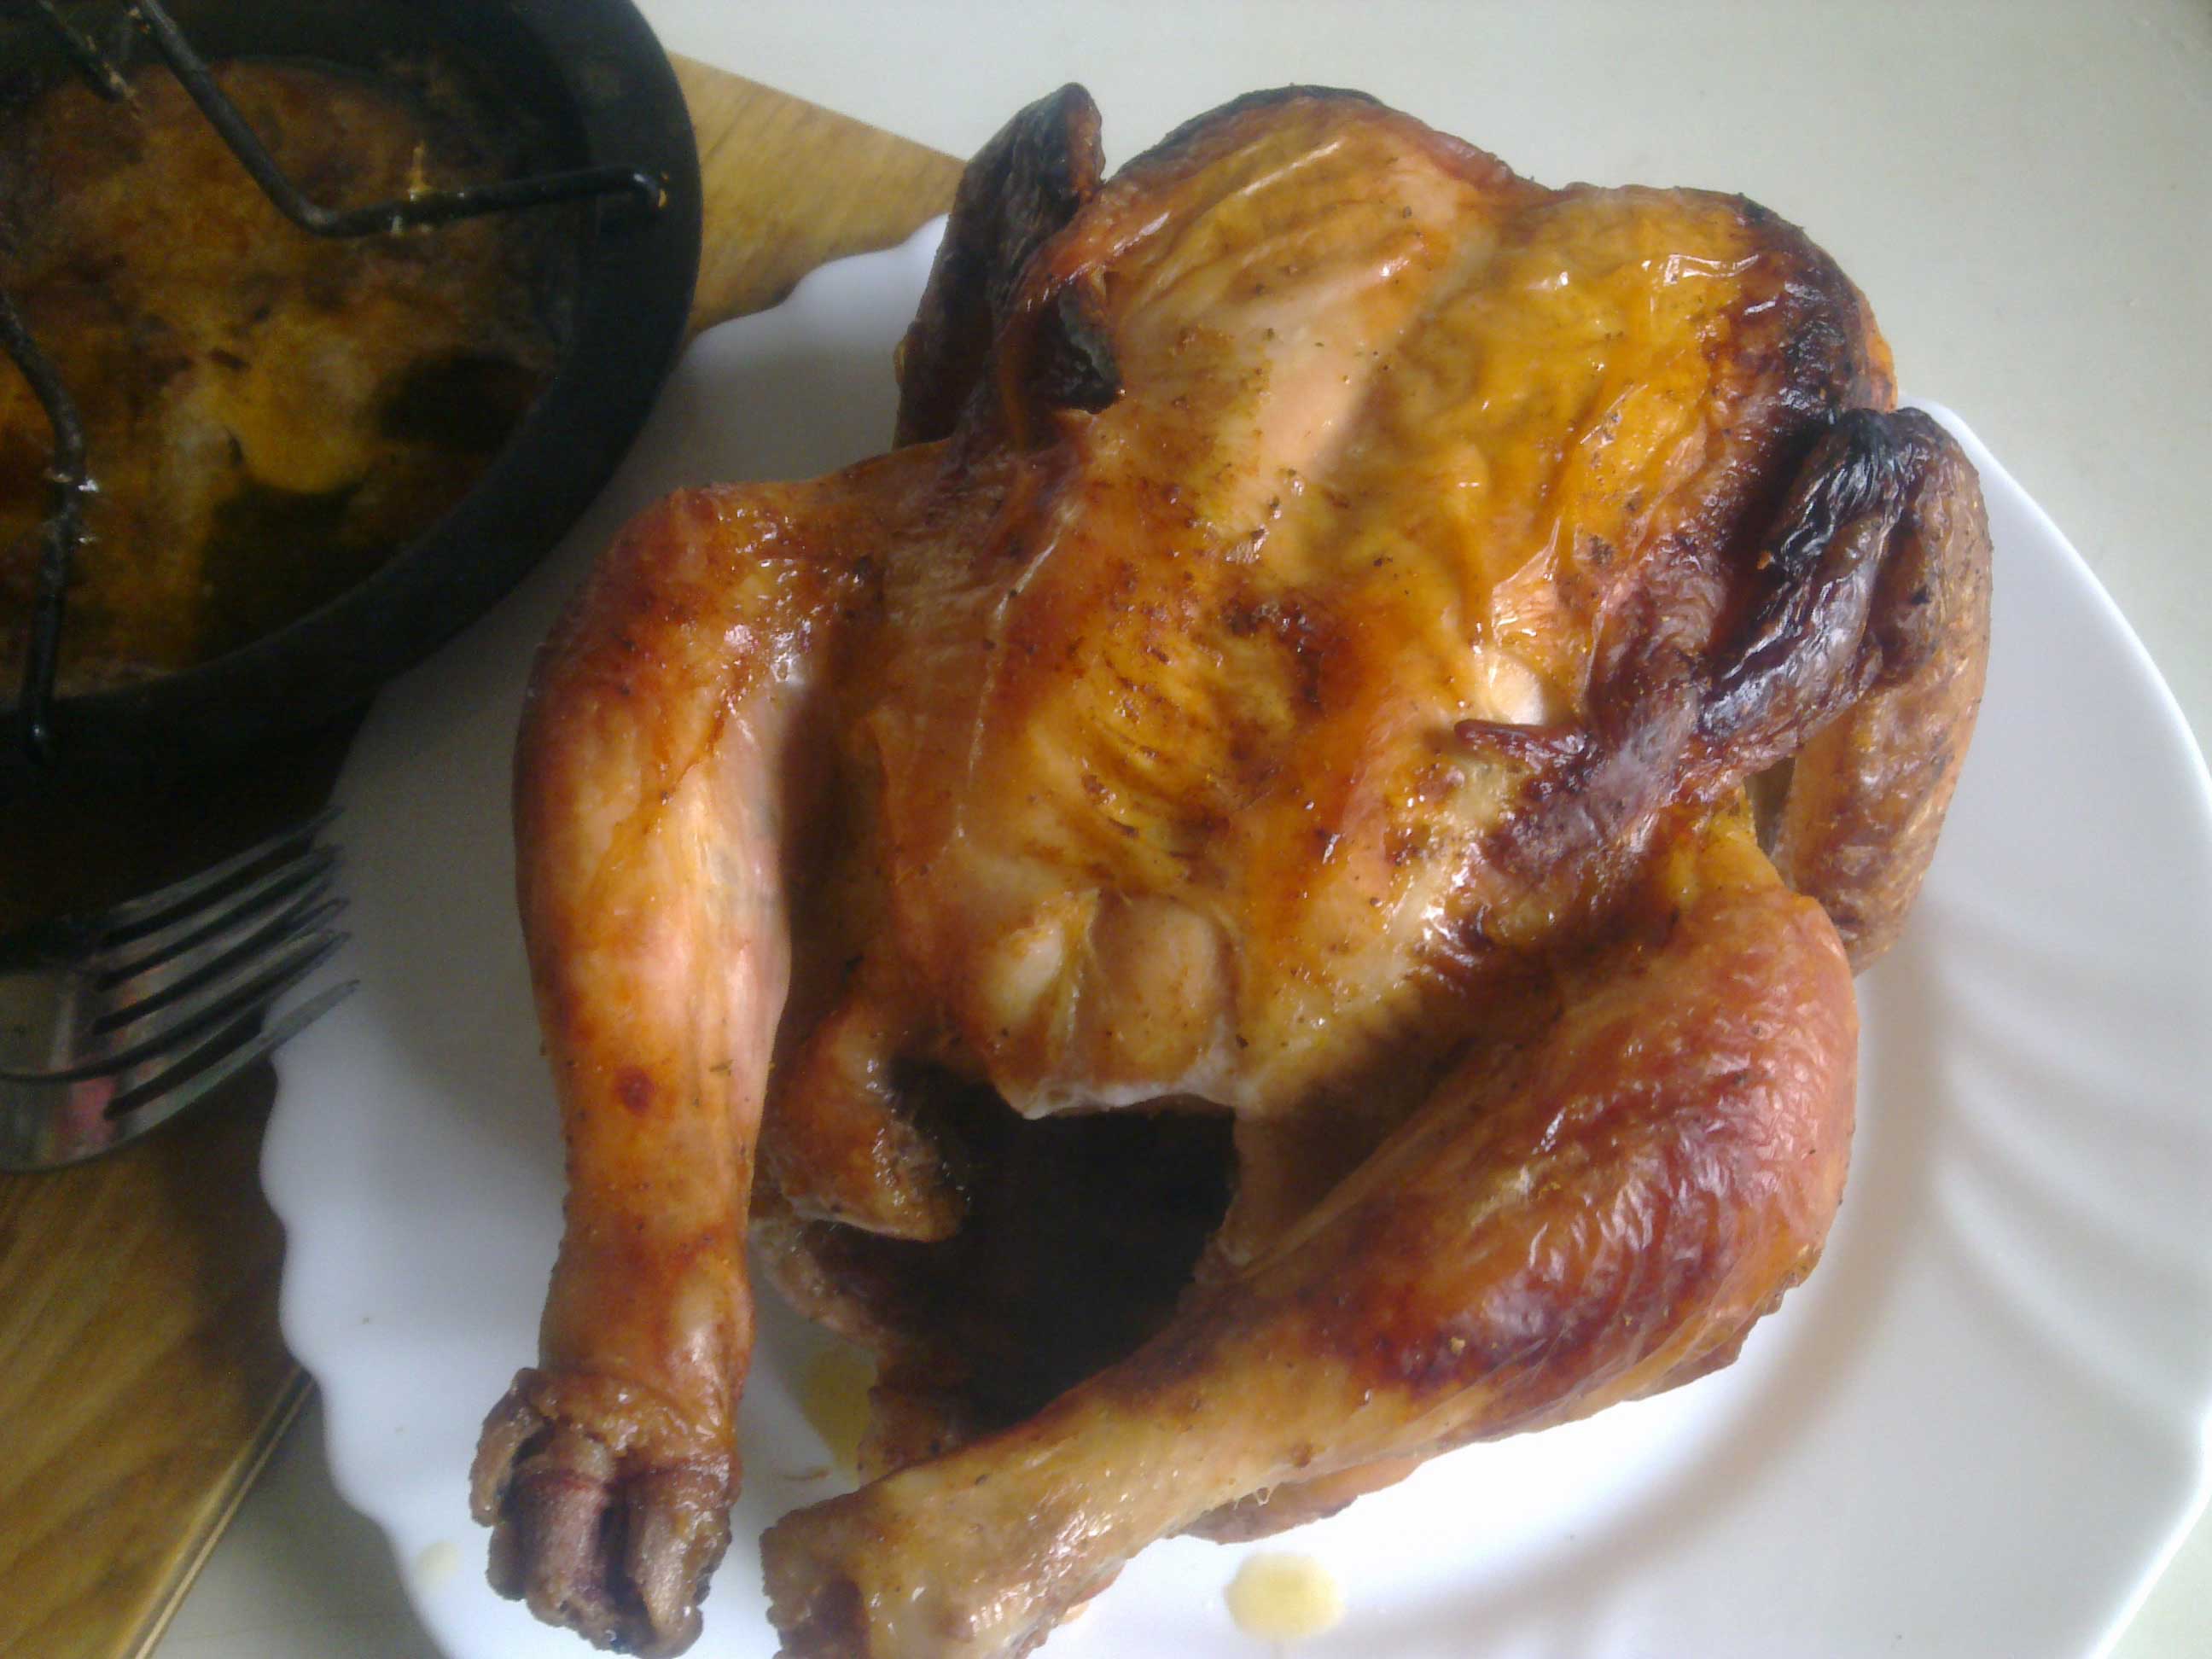 Маринад для курицы гриль в духовке: варианты и рецепты приготовления